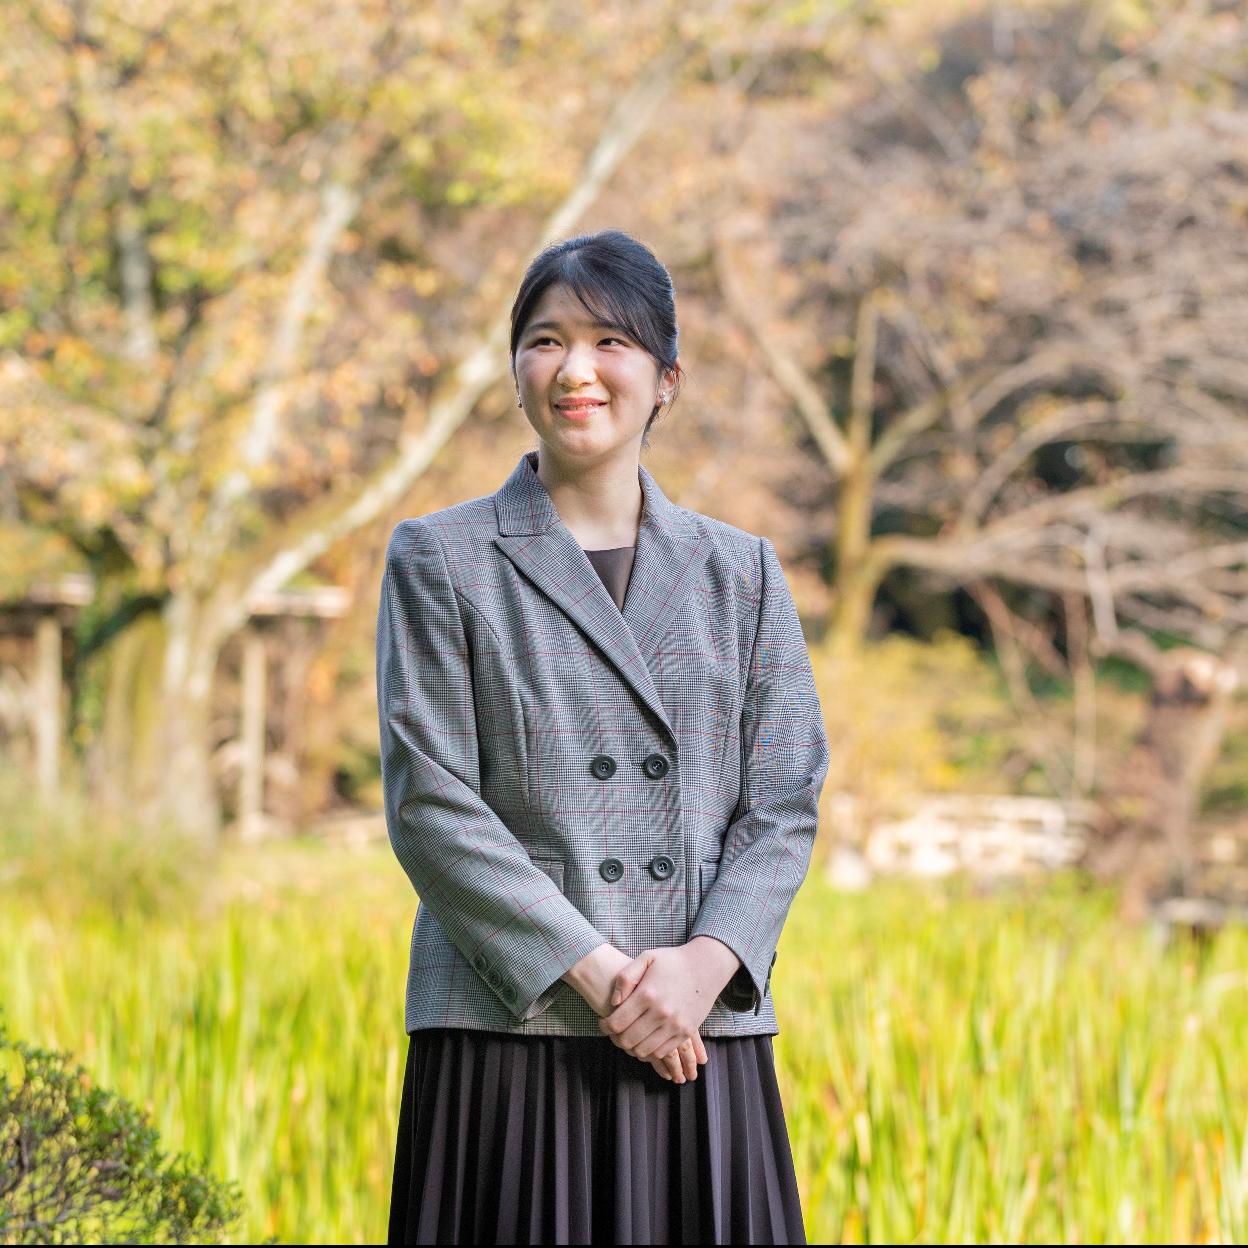 Aiko de Japón, la princesa sin sonrisa a la que todo el mundo parece hacer bullying desde sus compañeros de clase hasta el Gobierno Mujer Hoy